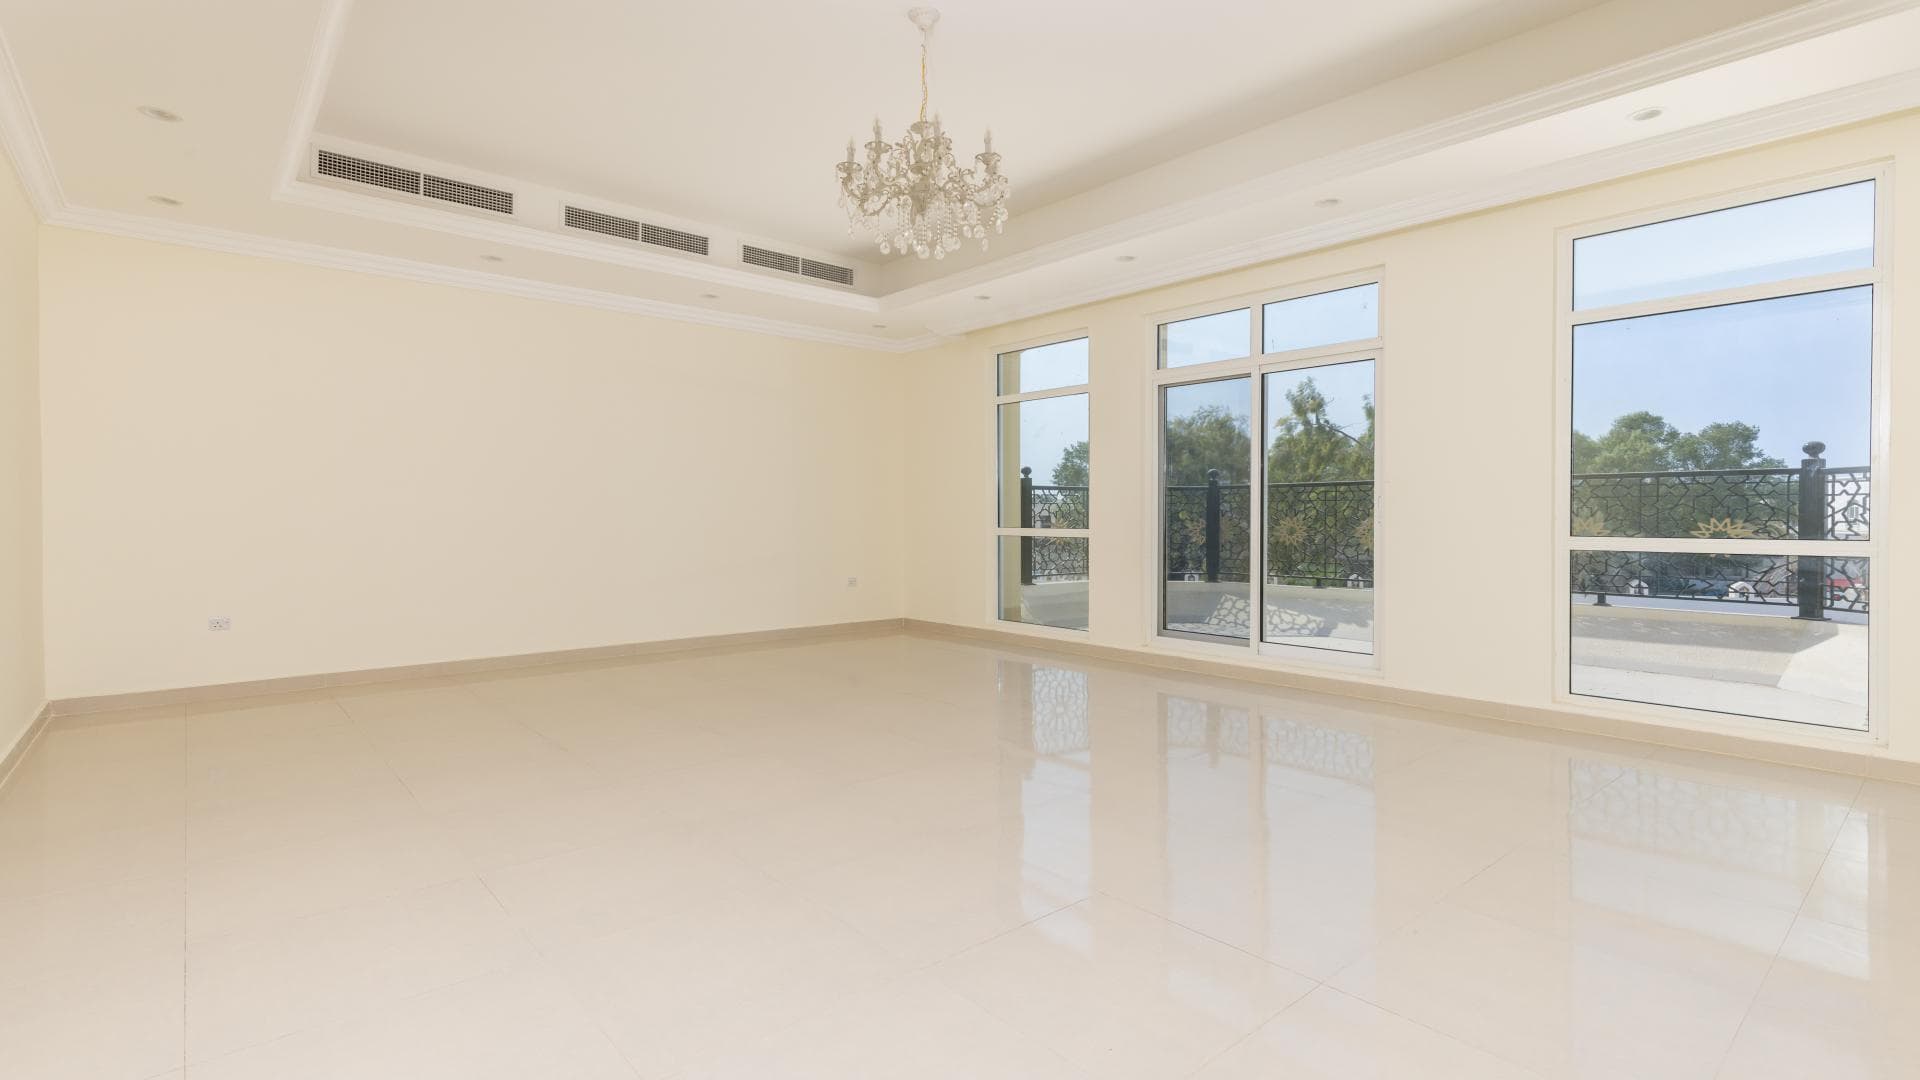 10 Bedroom Villa For Rent Jumeirah 2 Lp14748 2517558826fad000.jpg